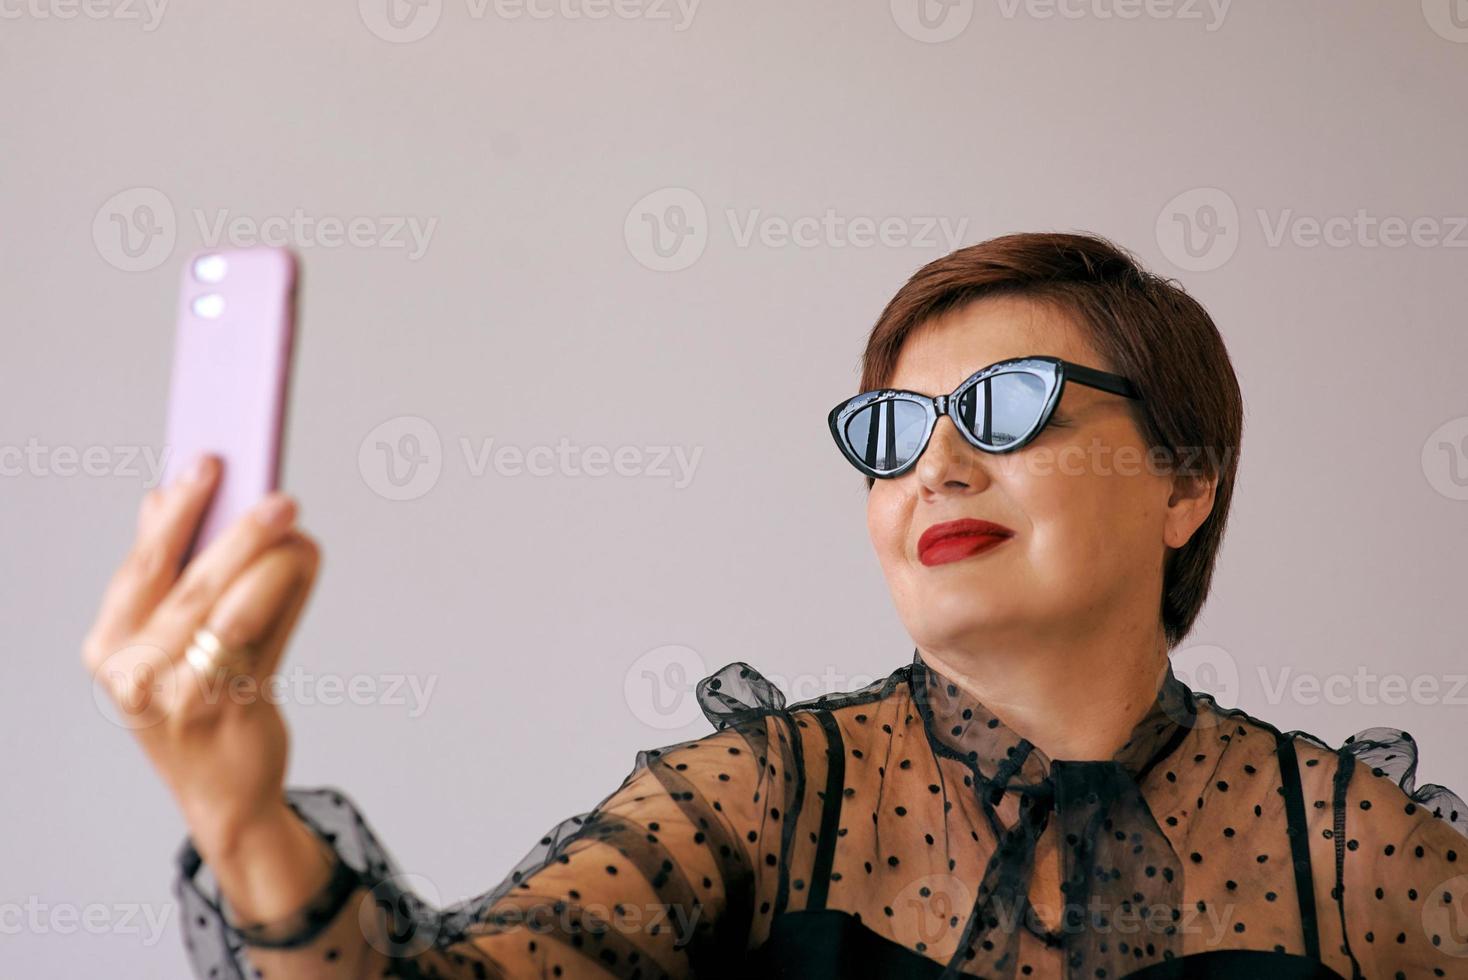 stijlvolle volwassen senior vrouw in rode blouse met mobiel videobellen of selfie maken. plezier, feest, stijl, levensstijl, technologie, feestconcept foto